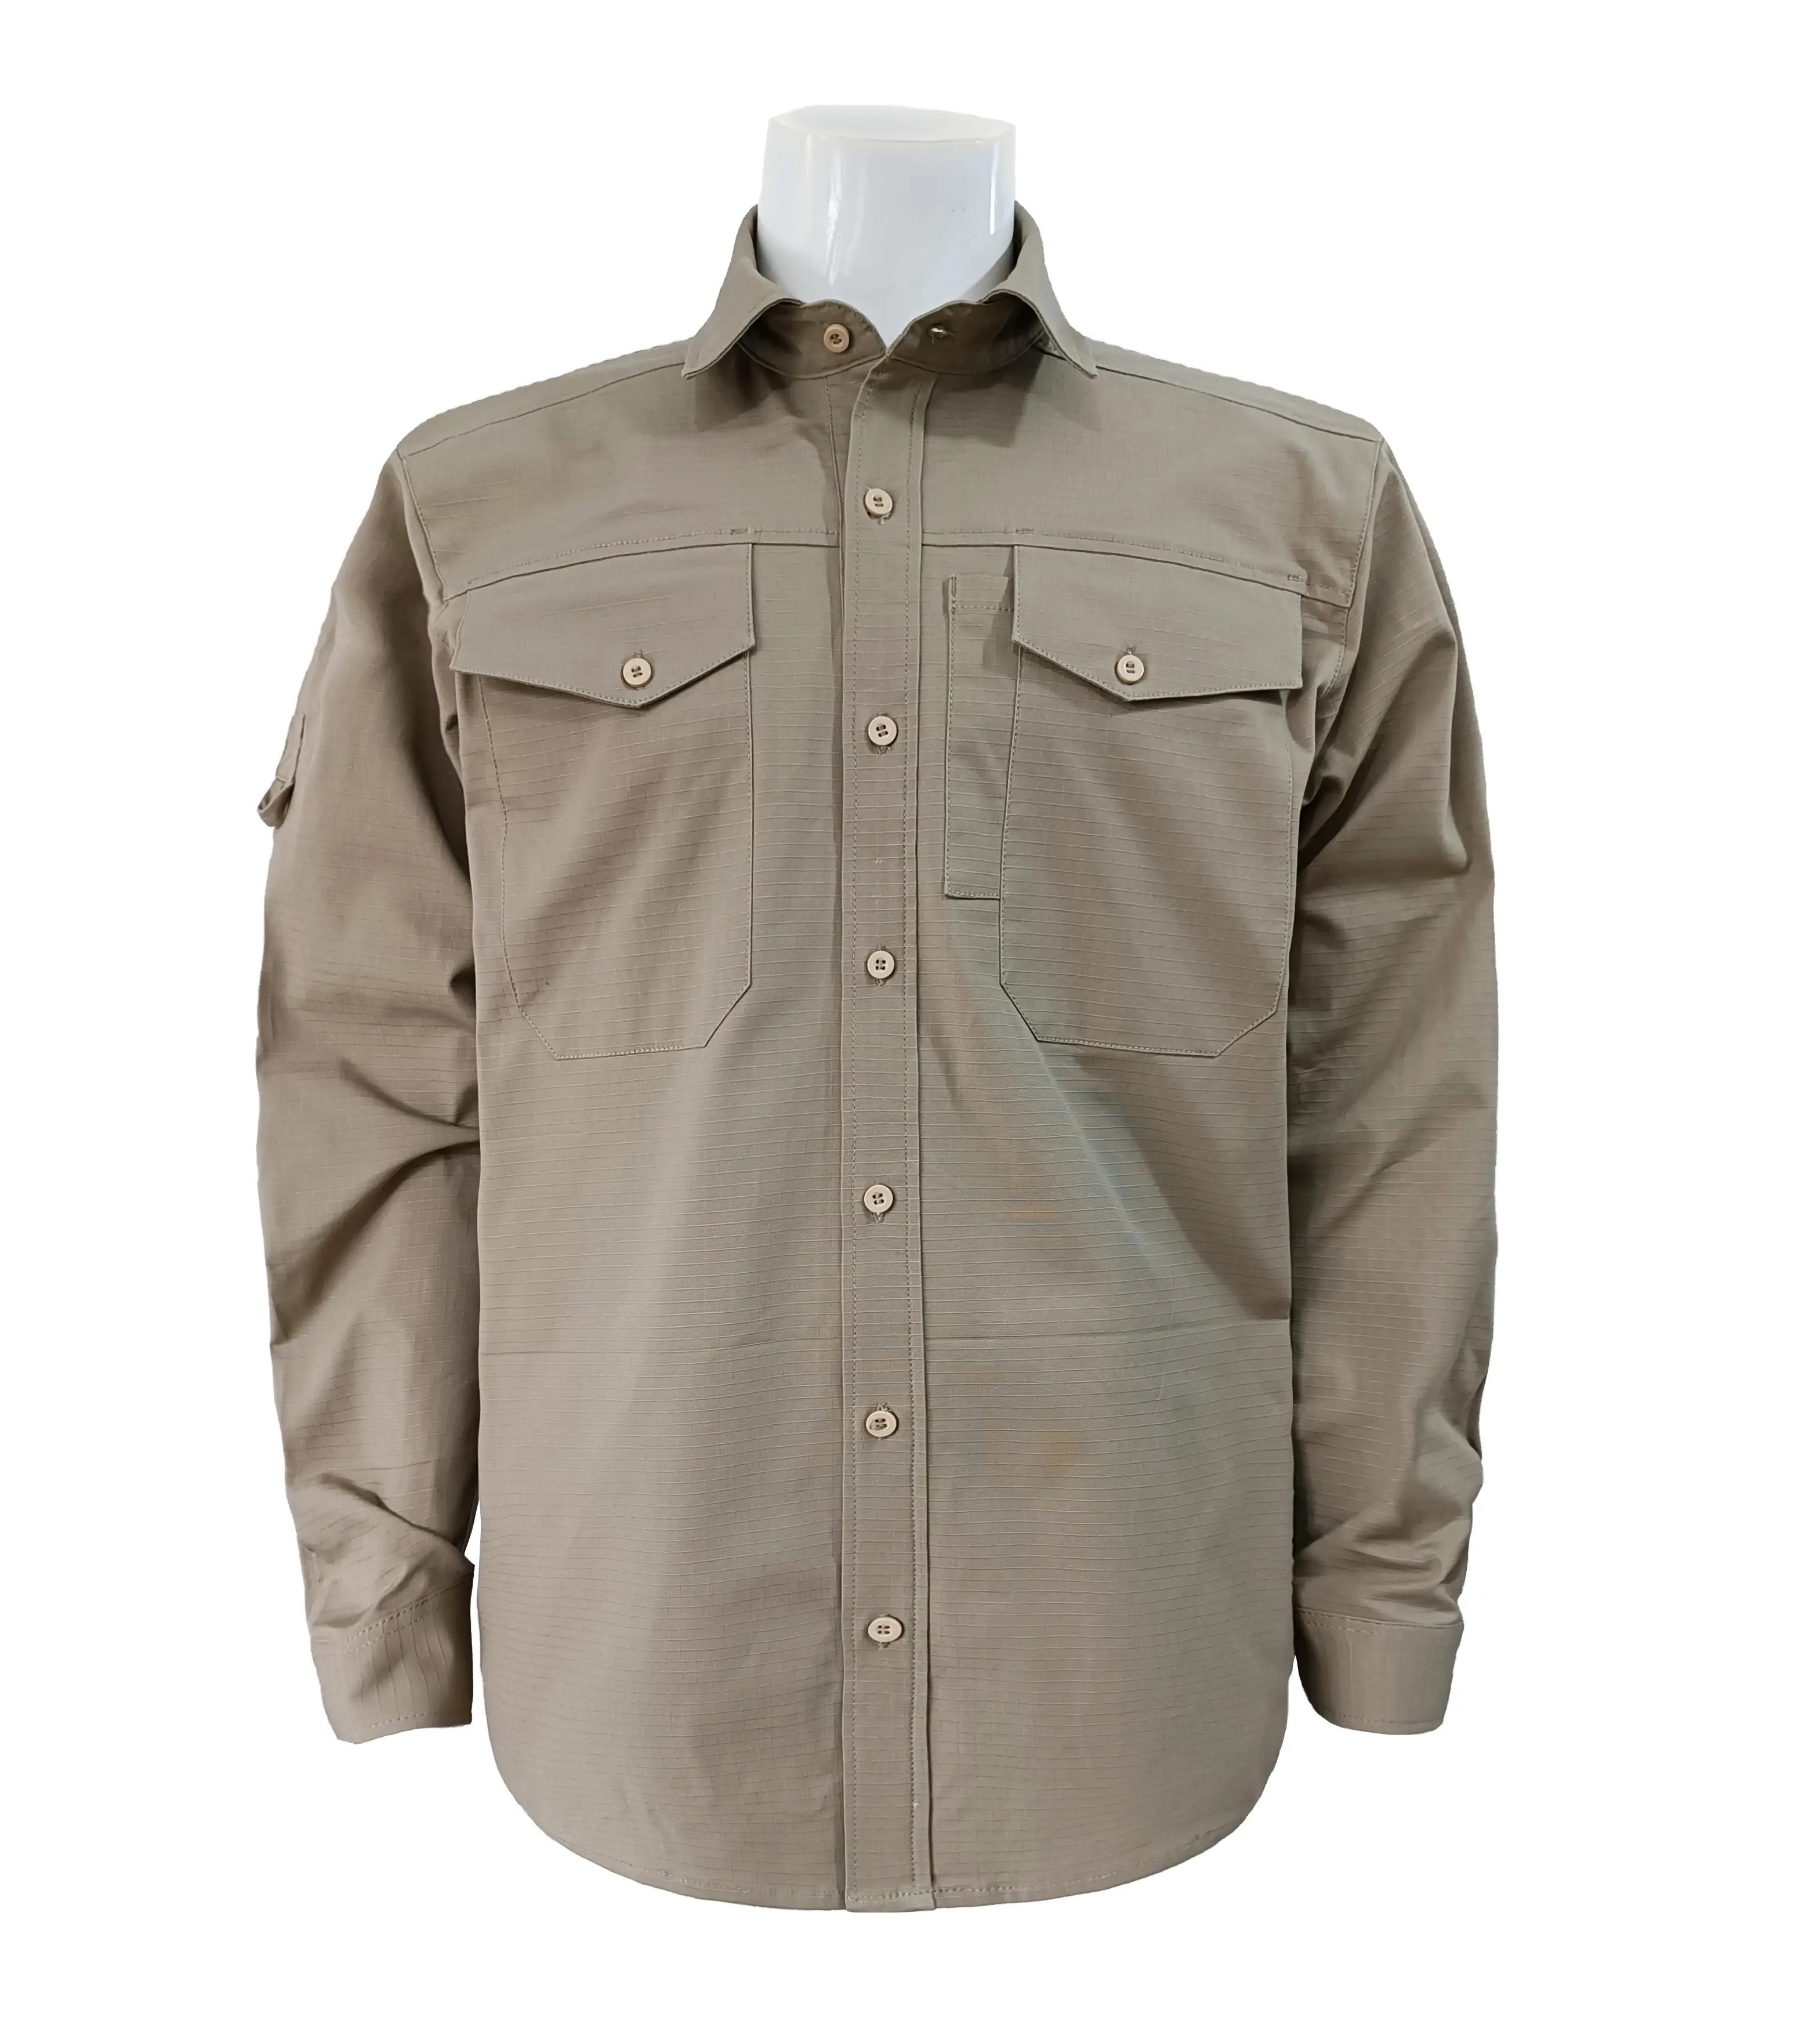 OEM printemps automne conception personnalisée 100% coton grande taille hommes chemise bouton fermeture à manches courtes hommes chemises de travail